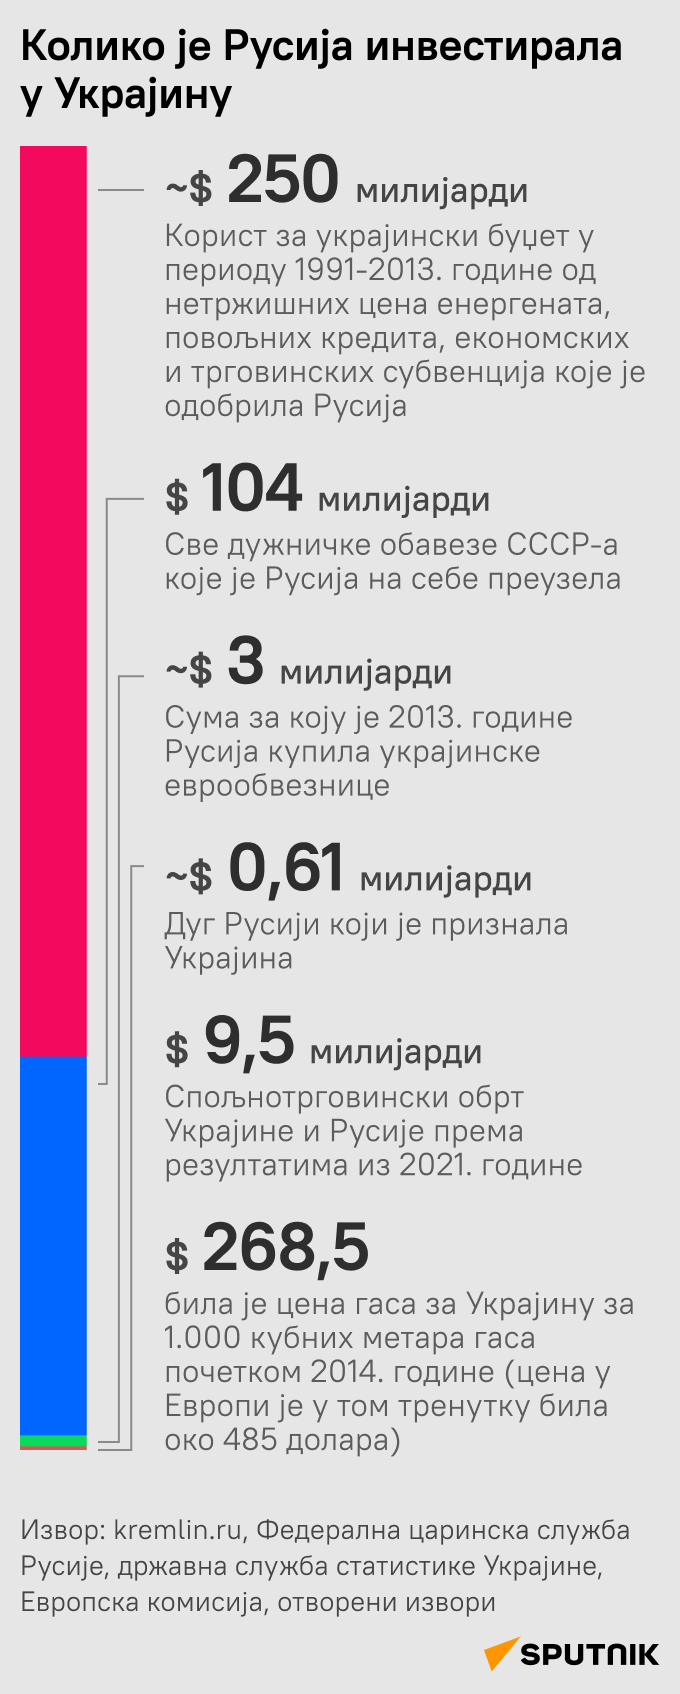 Инфографика Колико је Русија инвестирала у Украјину ЋИР моб - Sputnik Србија